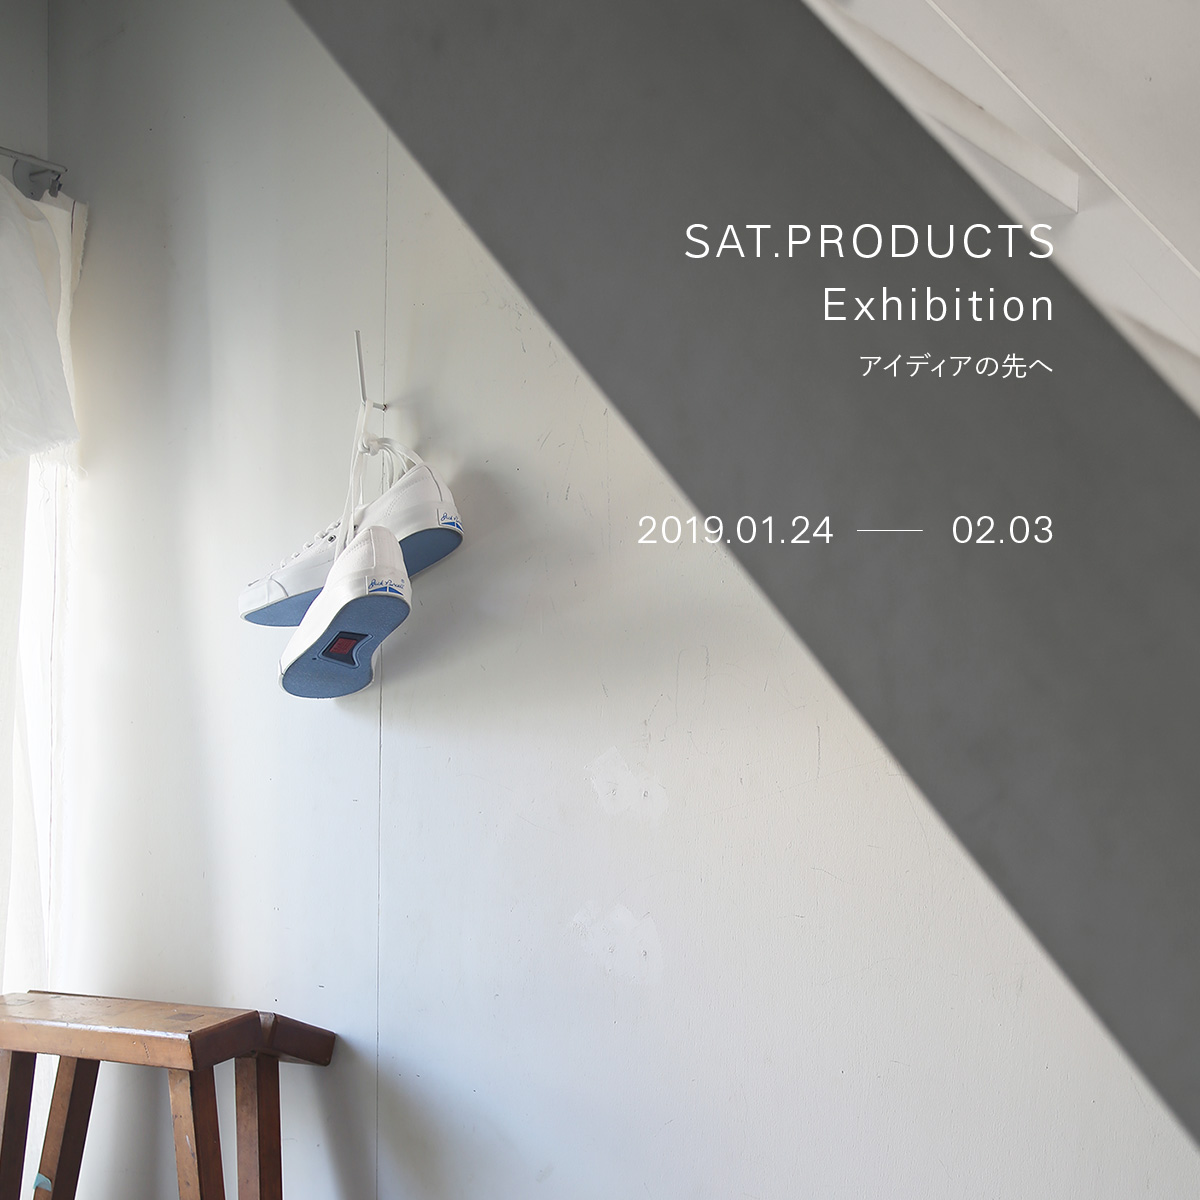 【展示会開催のお知らせ】SAT.PRODUCTS Exhibition